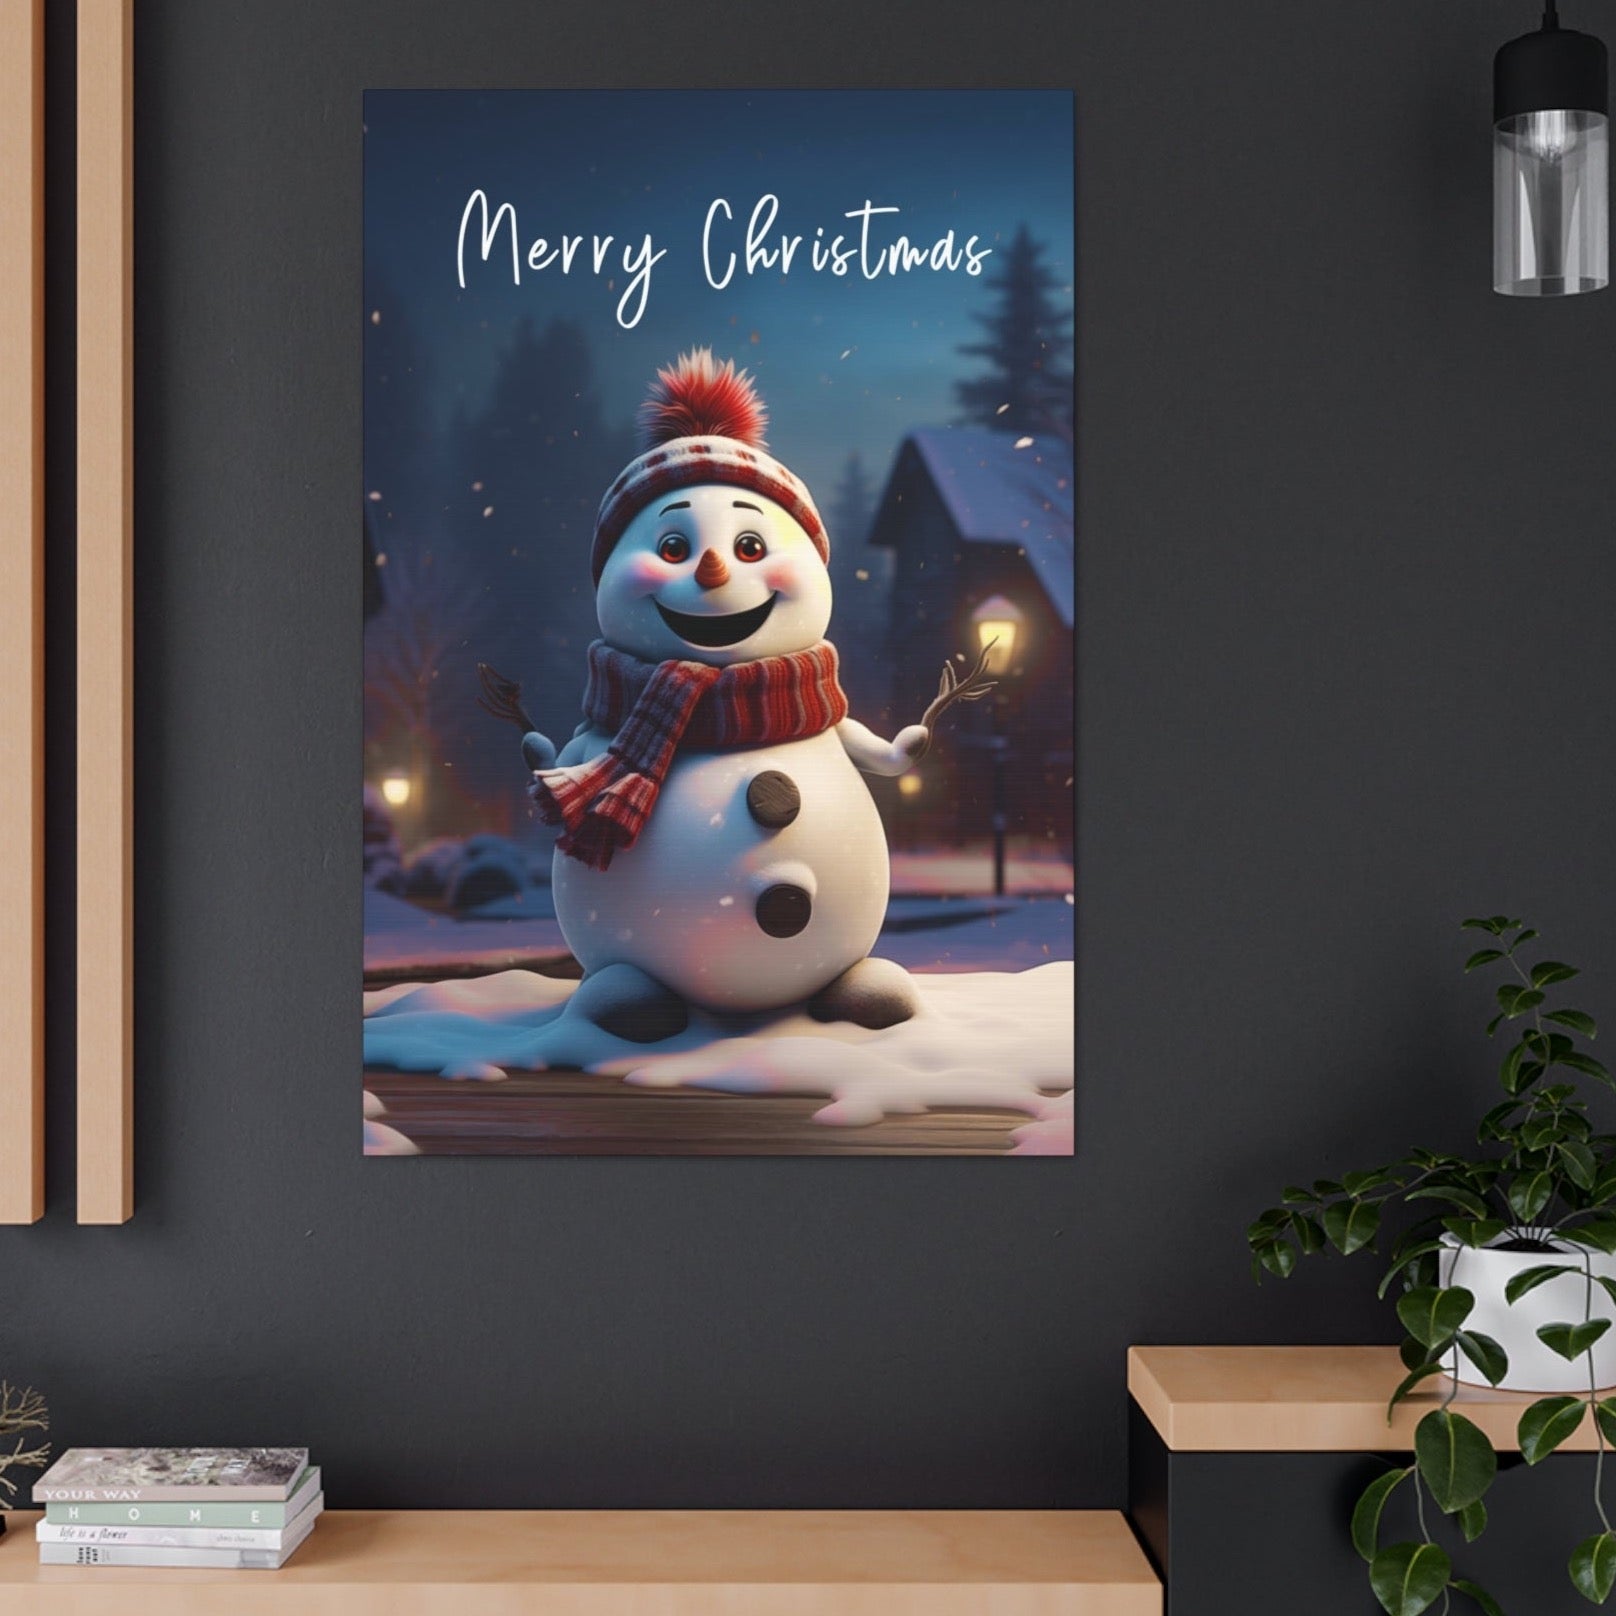 Christmas snowman wall decor ideas